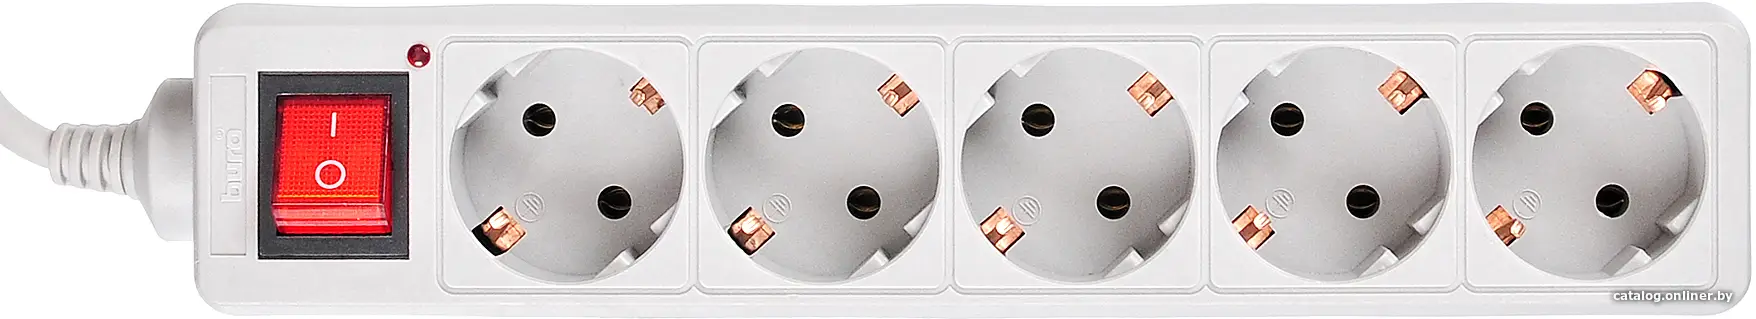 Купить Сетевой фильтр Buro 500SL-5-G 5м (5 розеток) серый (пакет ПЭ), цена, опт и розница